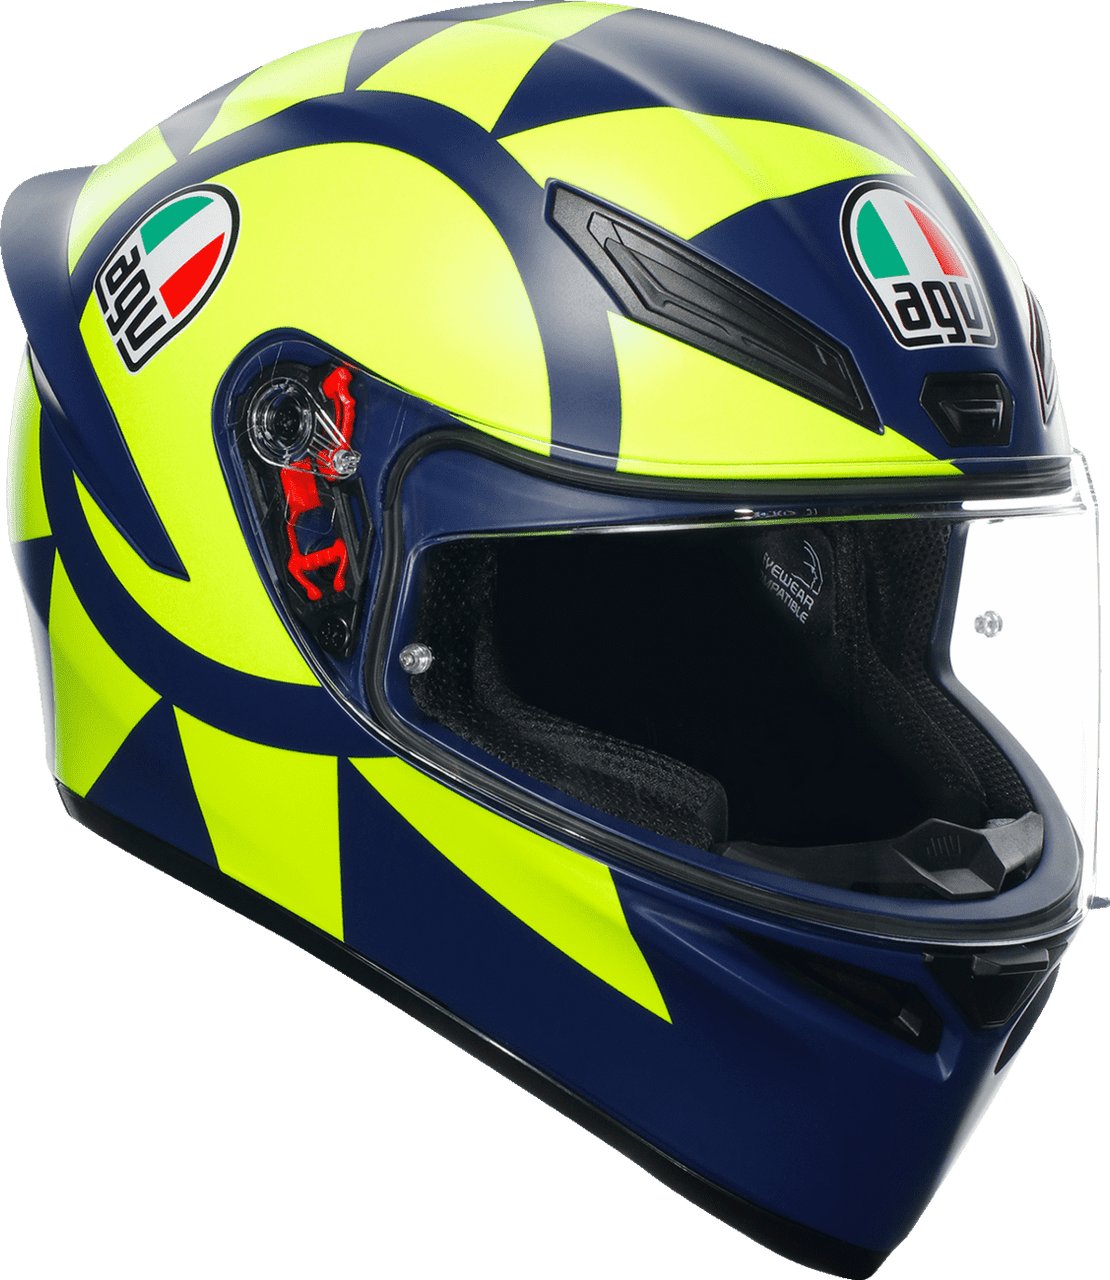 AGV K1 S Soleluna 2018 Full Face Motorcycle Helmet - Team Motorcycle